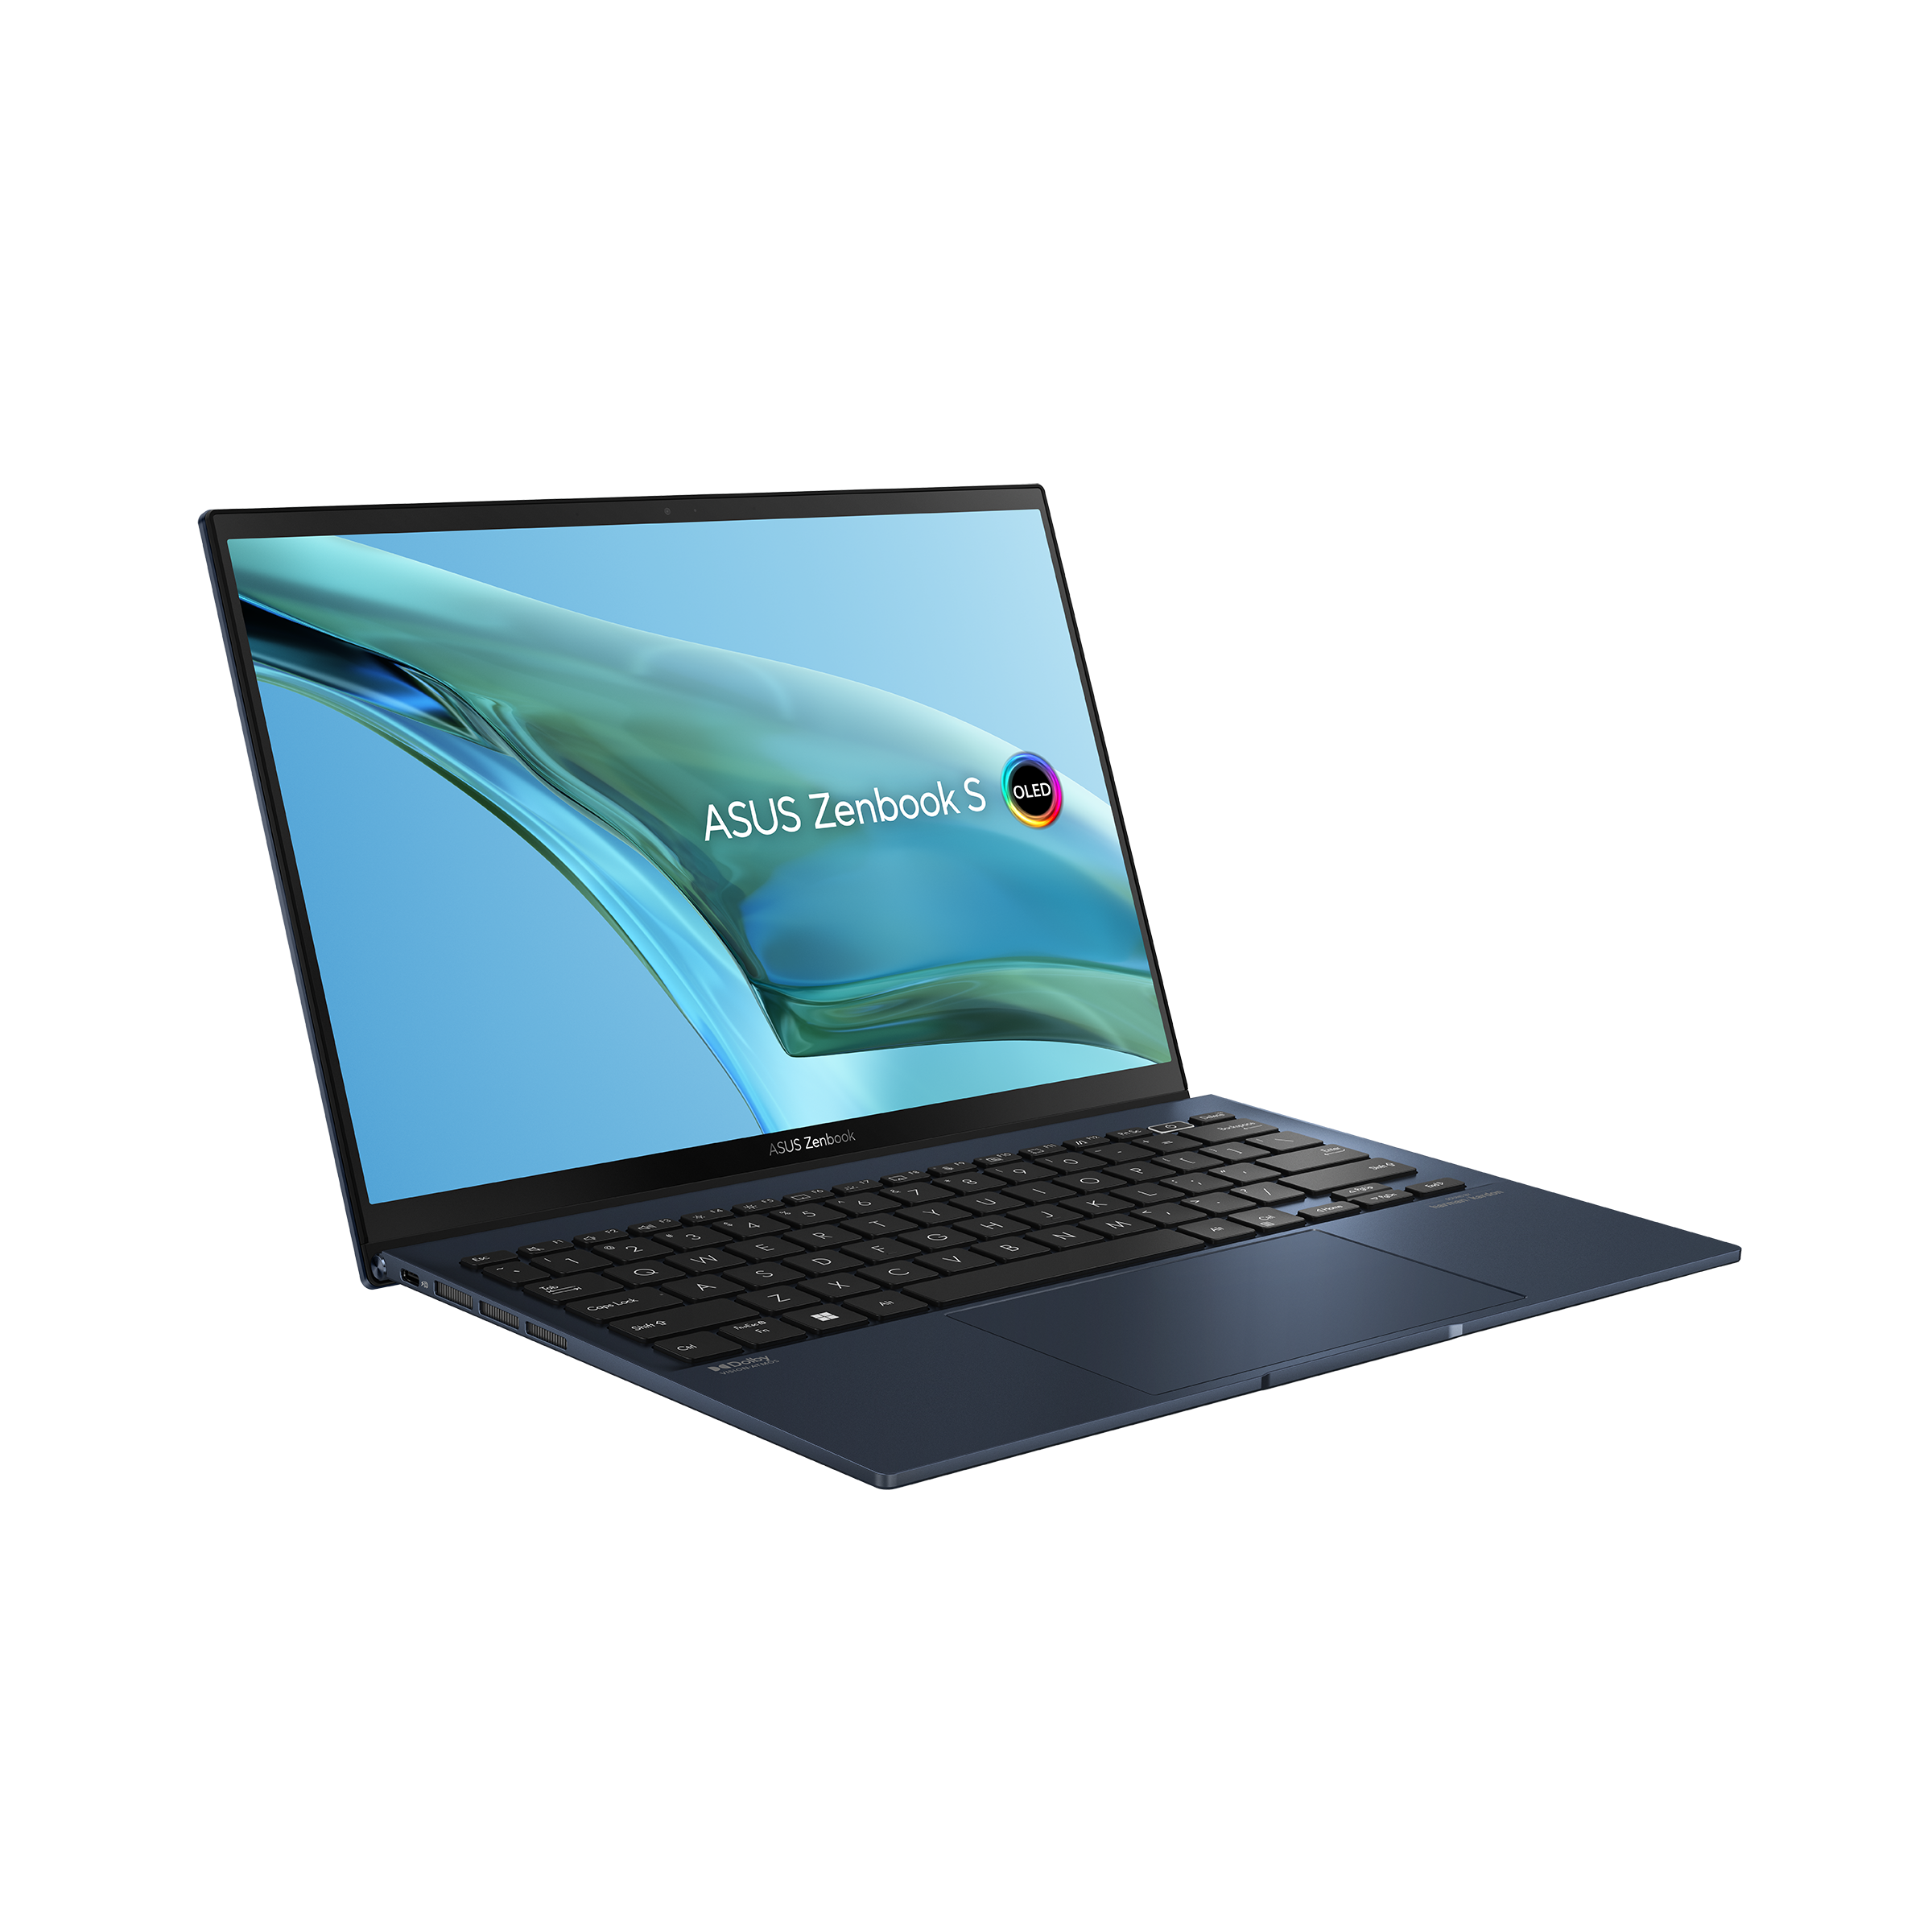 PC portable : promotion exceptionnelle sur l'Asus Zenbook OLED chez